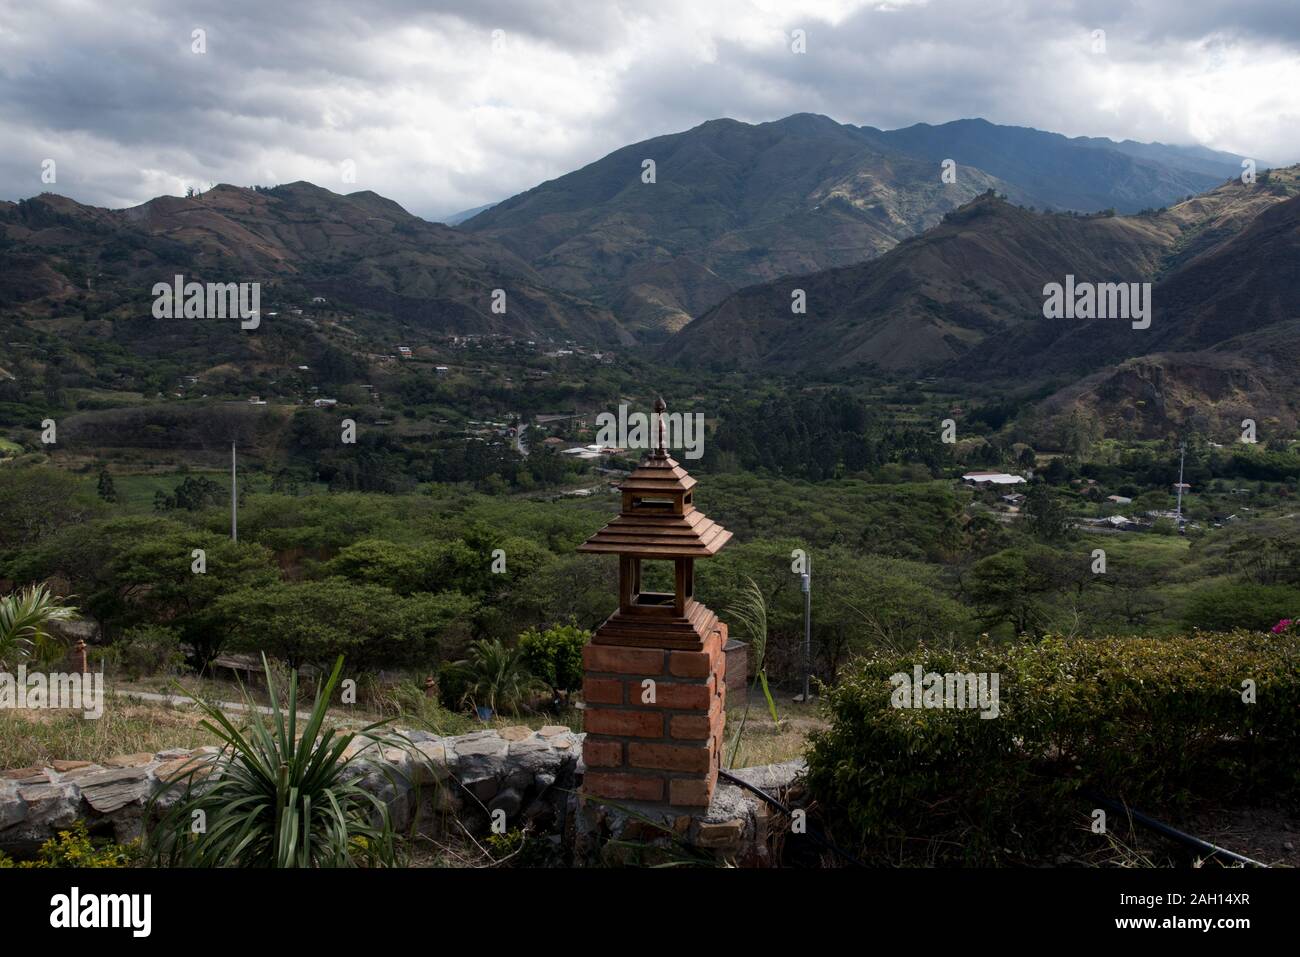 Vilcabamba è conosciuta come la Valle Della Longevità per le persone che crescono molto vecchio. Si trova nelle Ande dell'Ecuador. Foto Stock